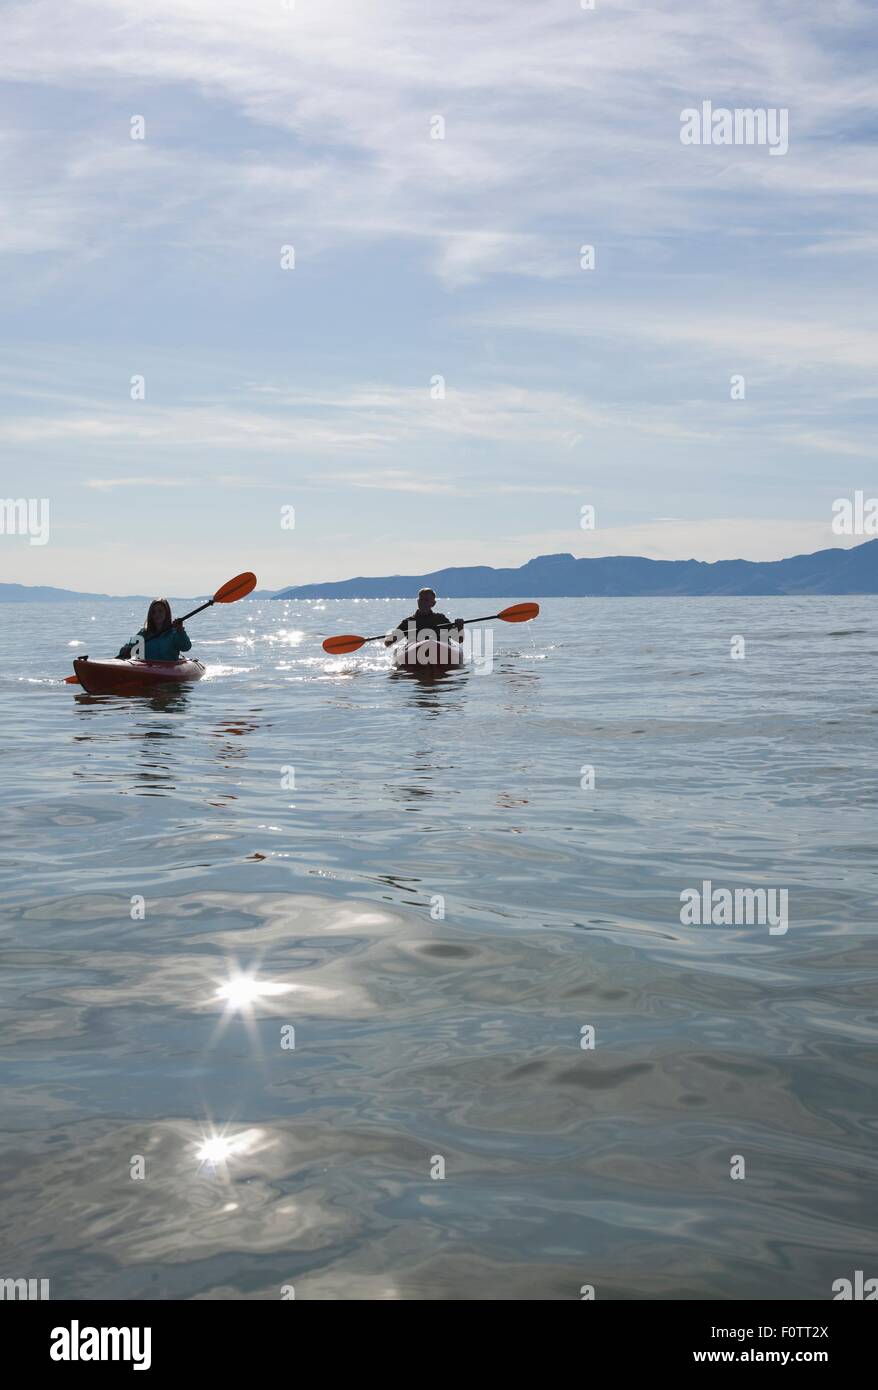 Kayakers sitting in kayaks on water infront of mountain range, Great Salt Lake, Utah, USA Stock Photo